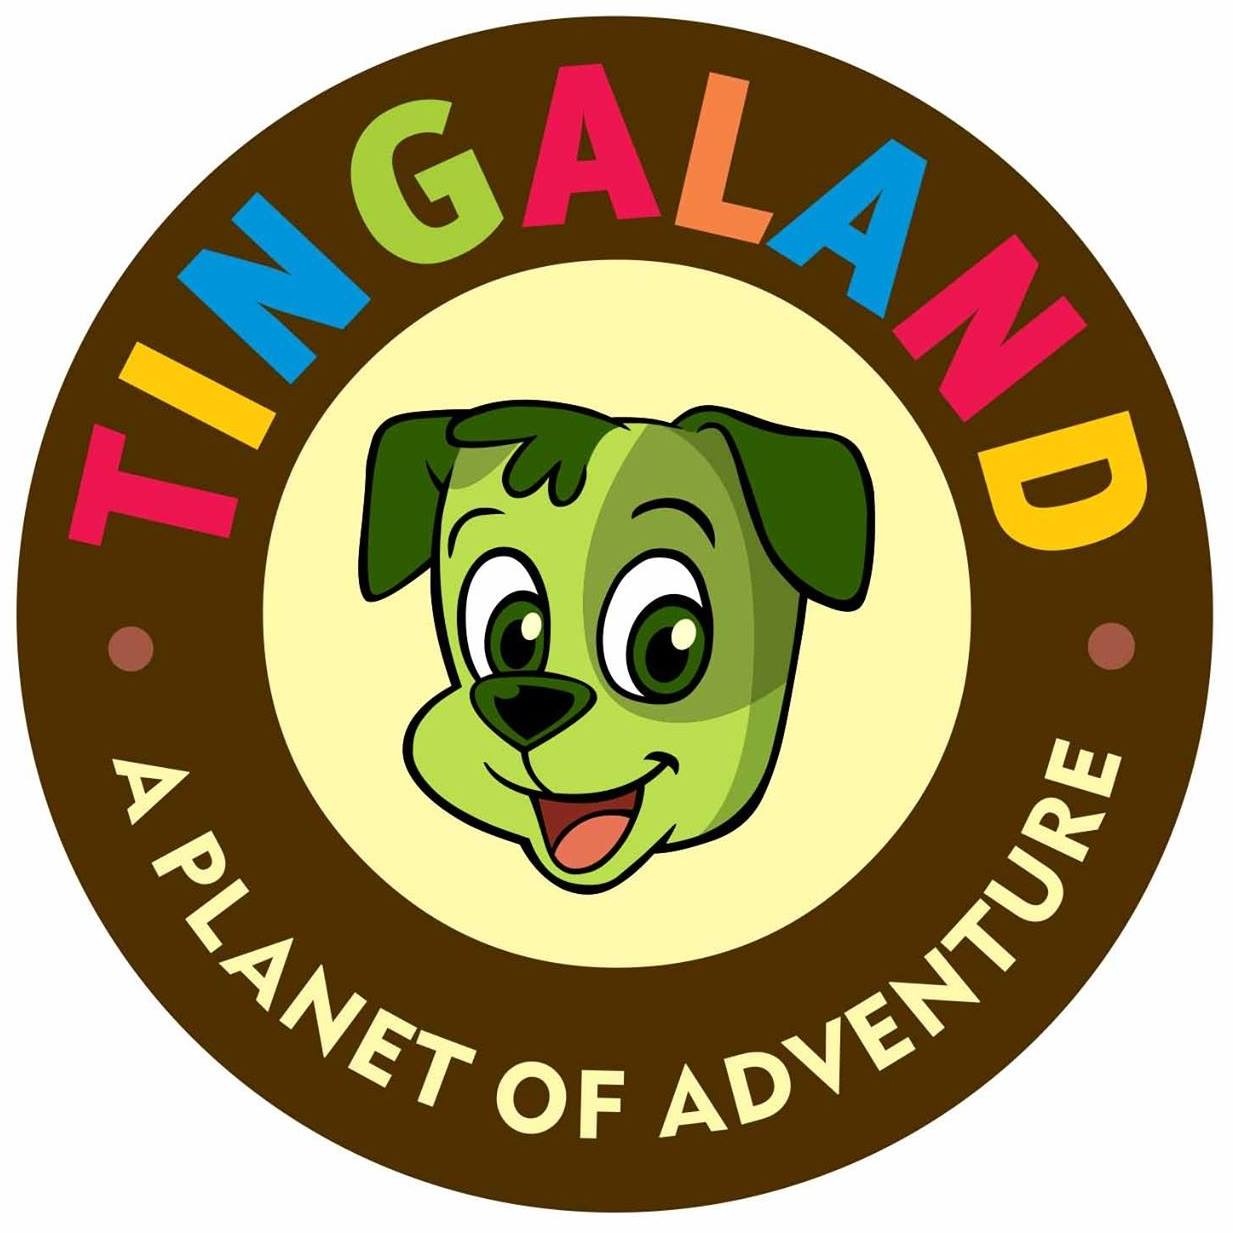 tingaland round logo